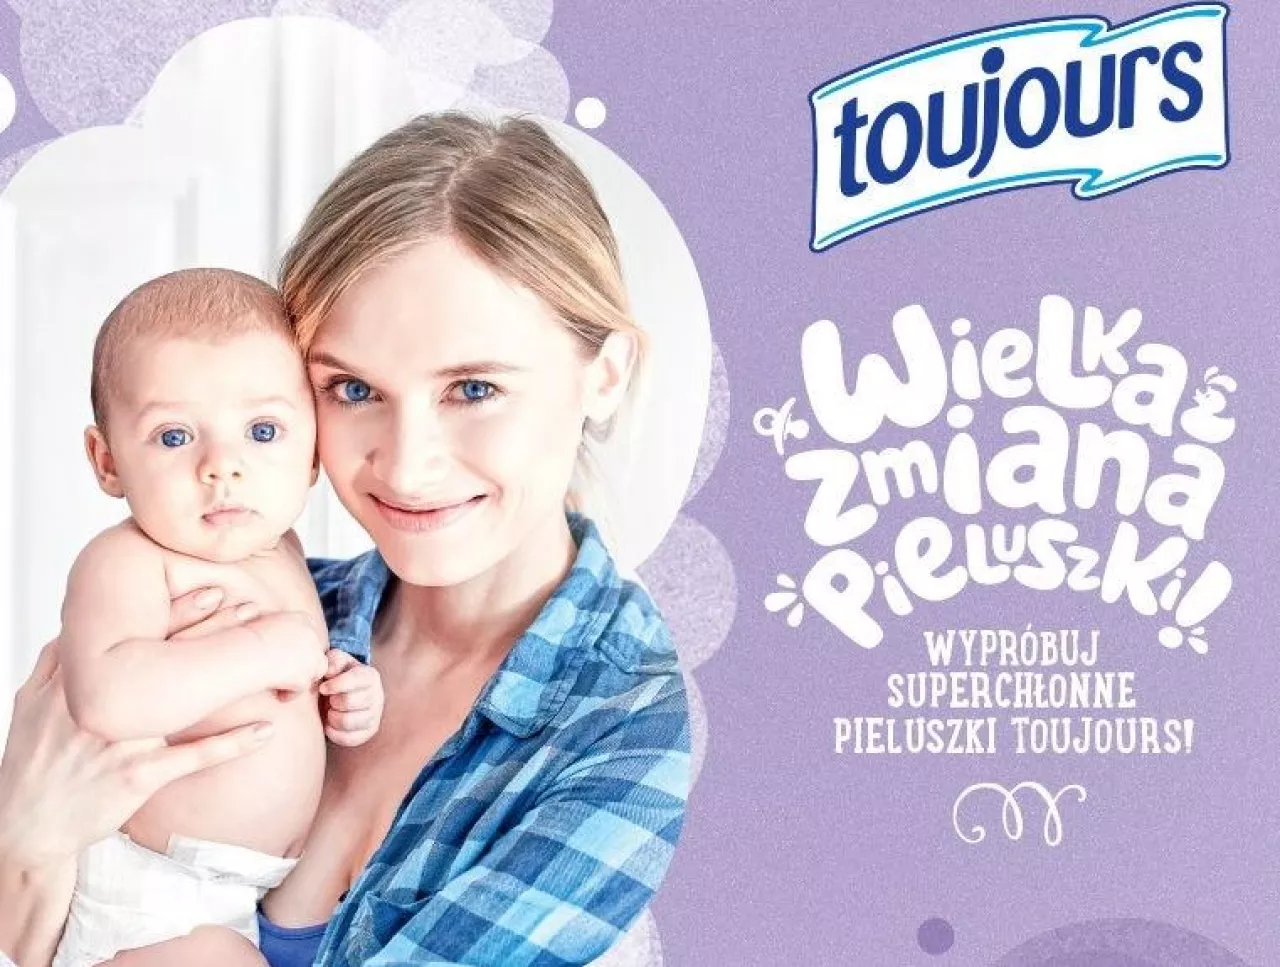 Pieluszki Toujours - marka własna sieci Lidl Polska, fot. Lidl ()